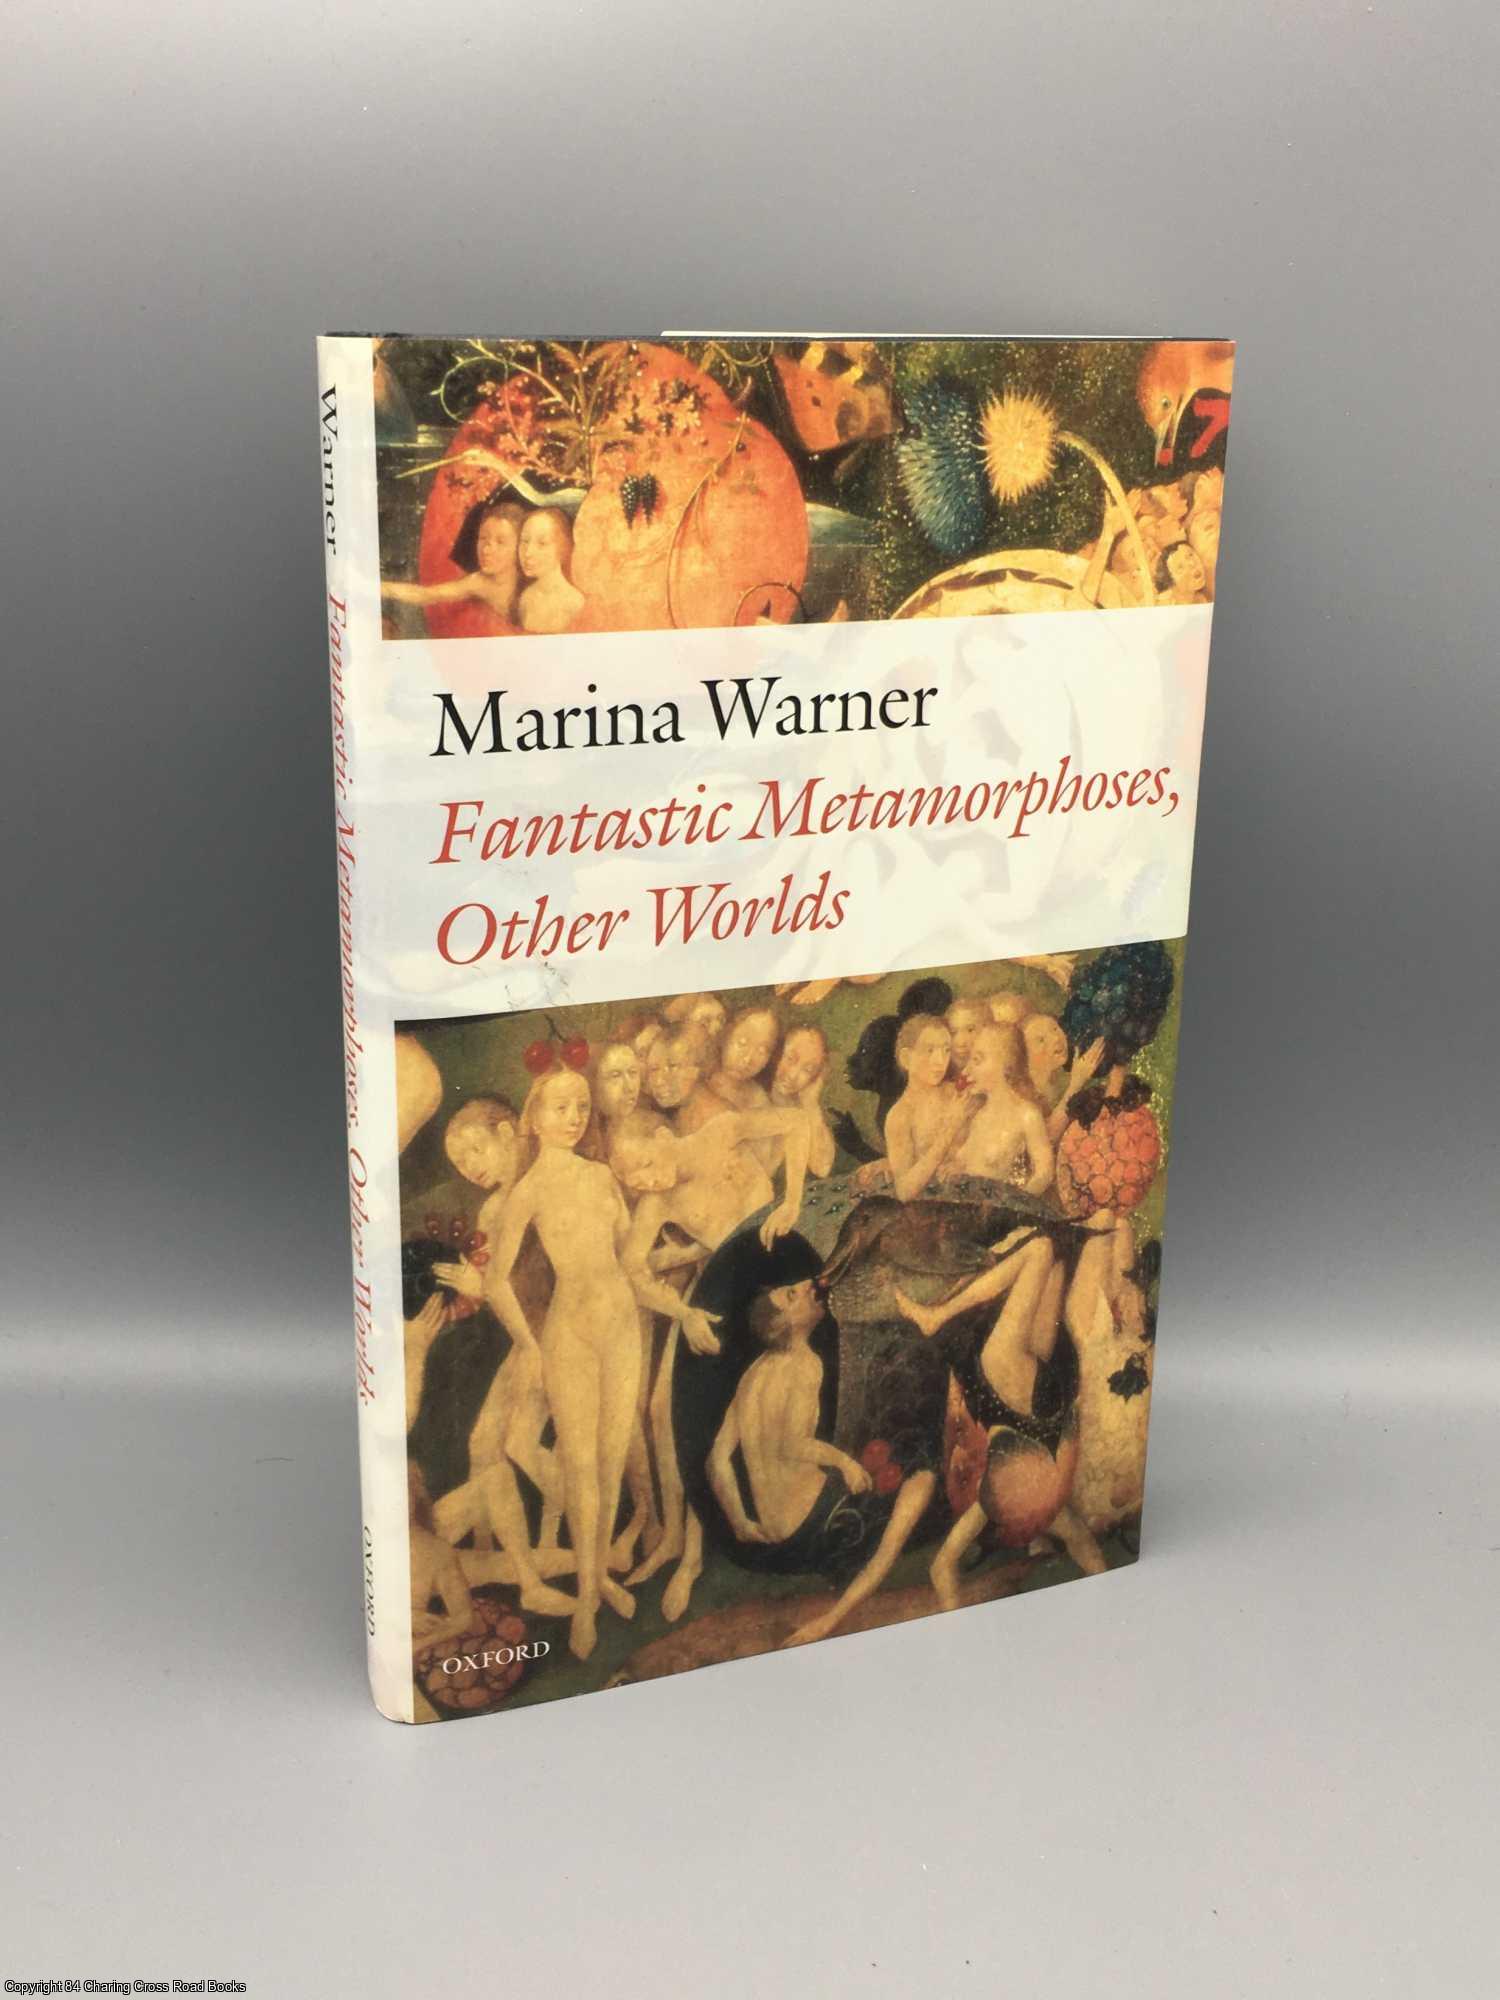 Warner, Marina - Fantastic Metamorphoses, Other Worlds